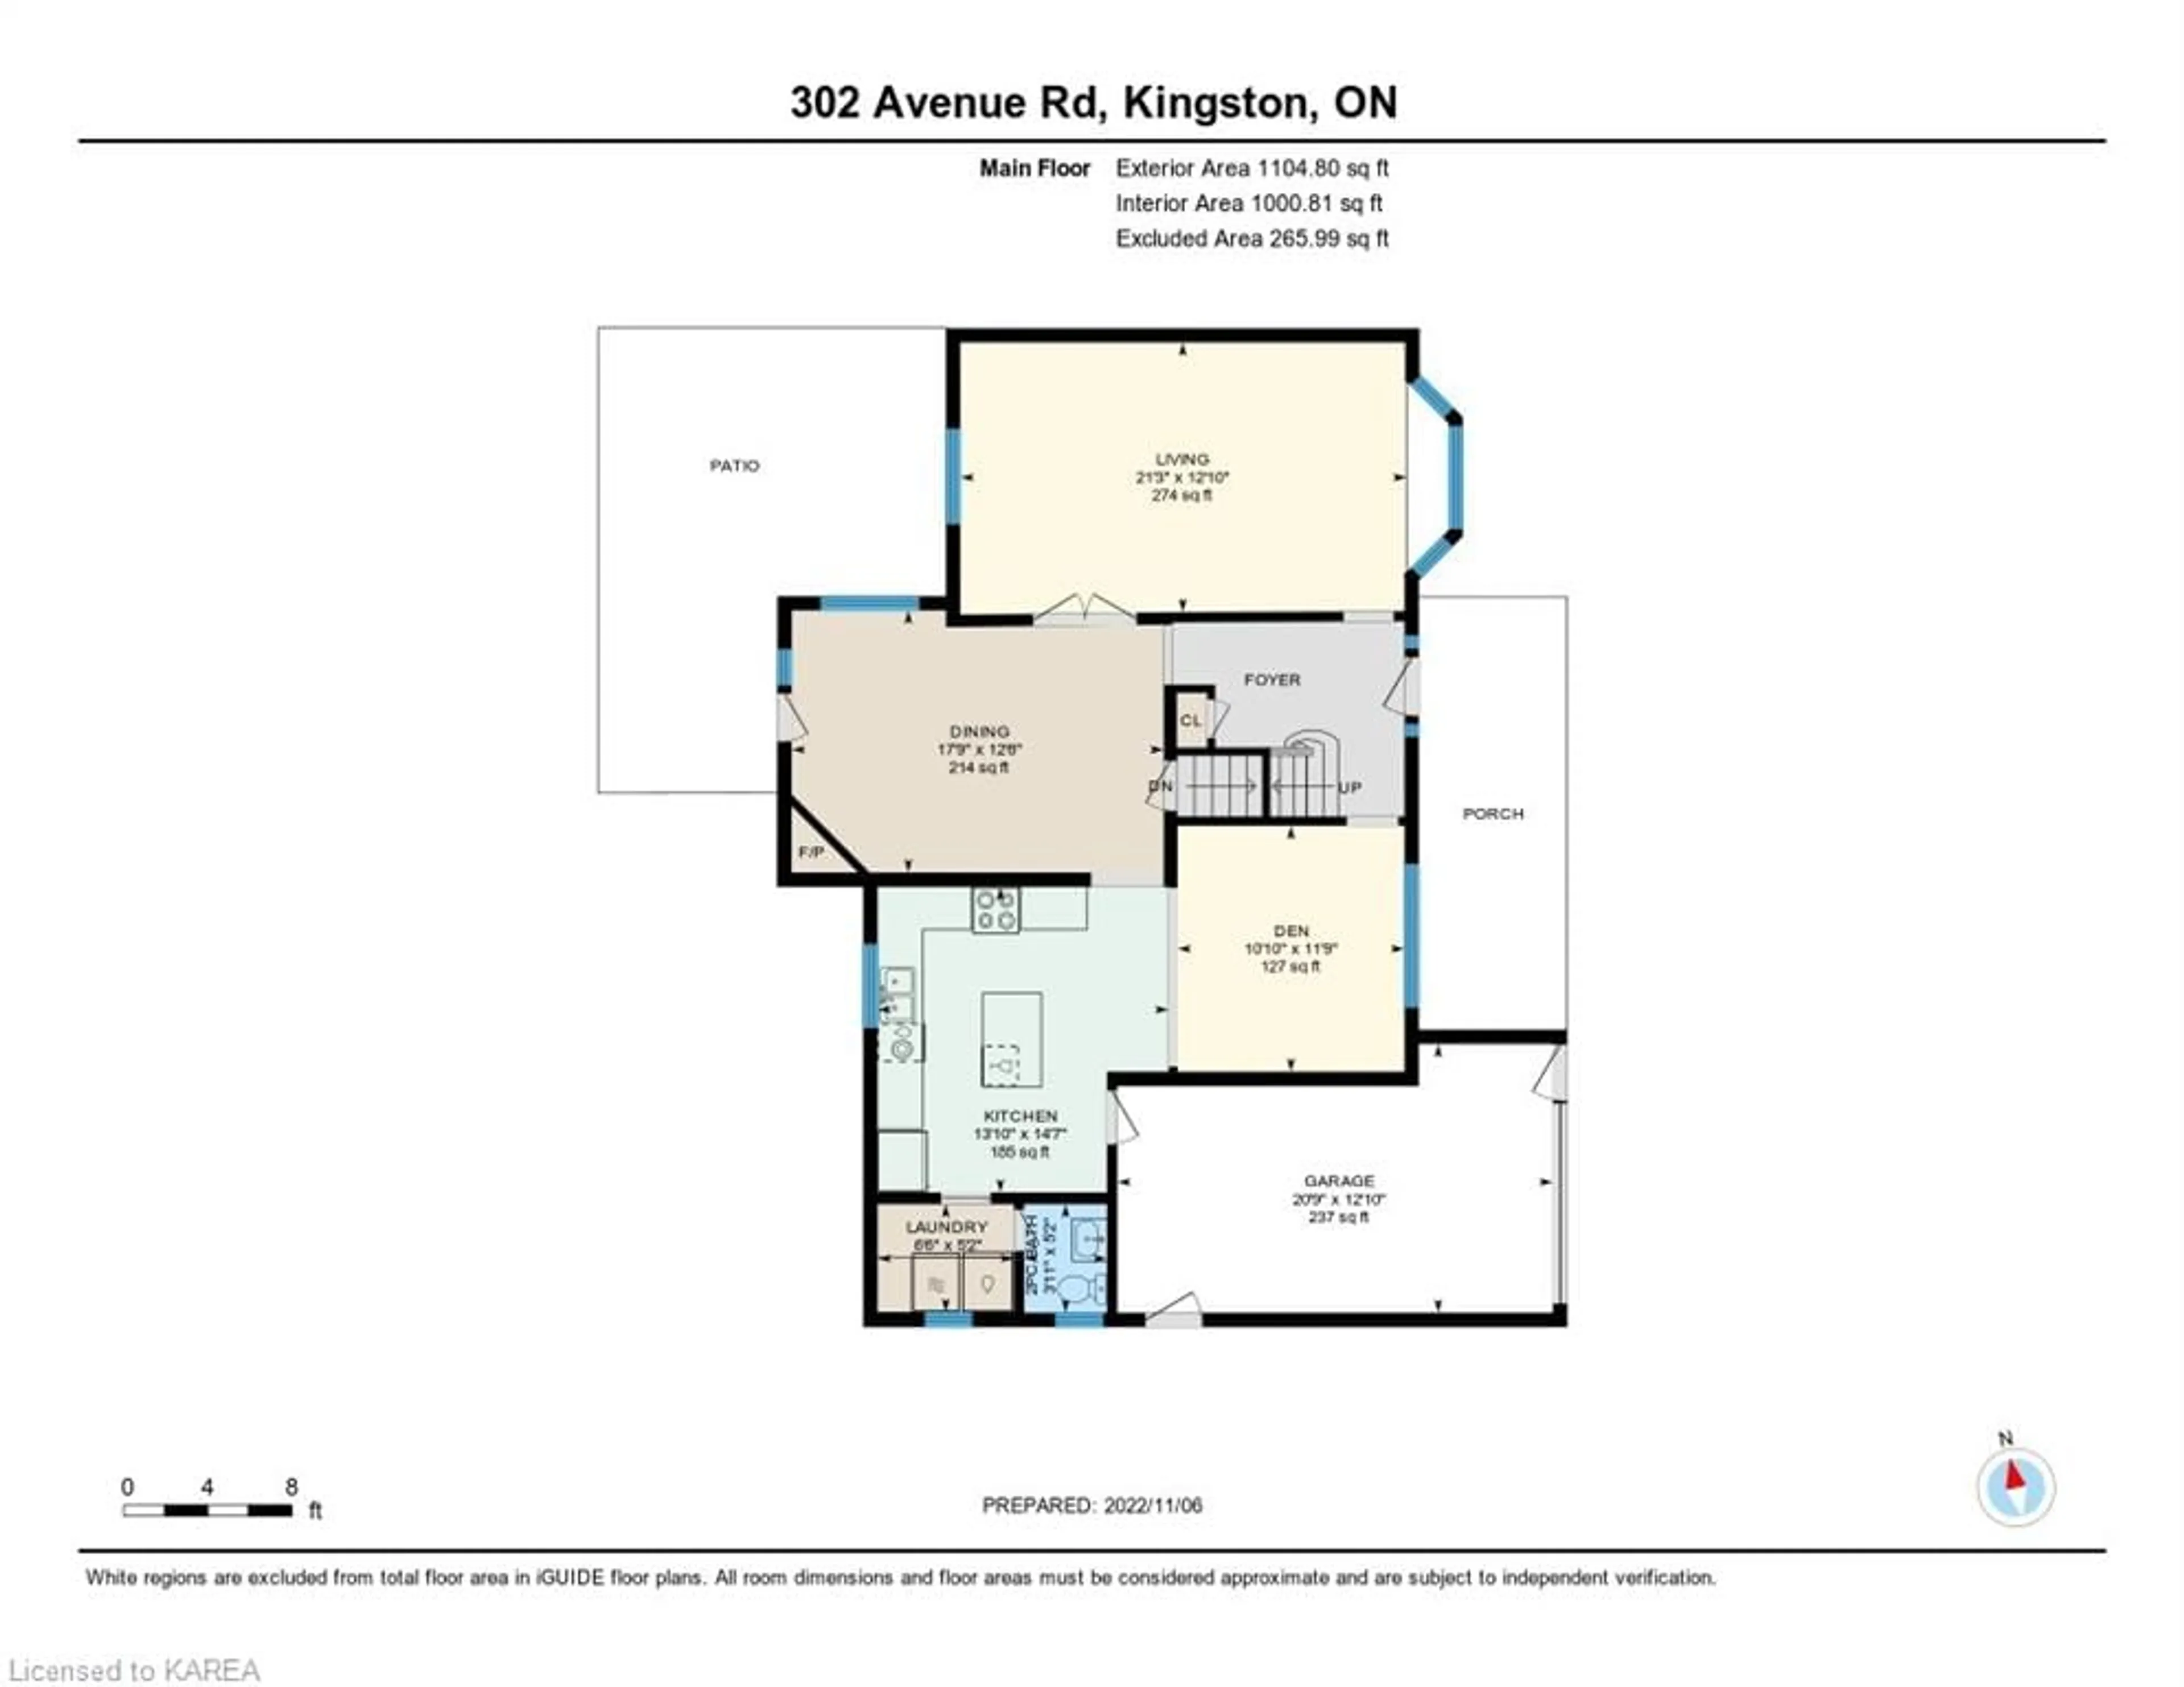 Floor plan for 302 Avenue Rd, Kingston Ontario K7M 1C9